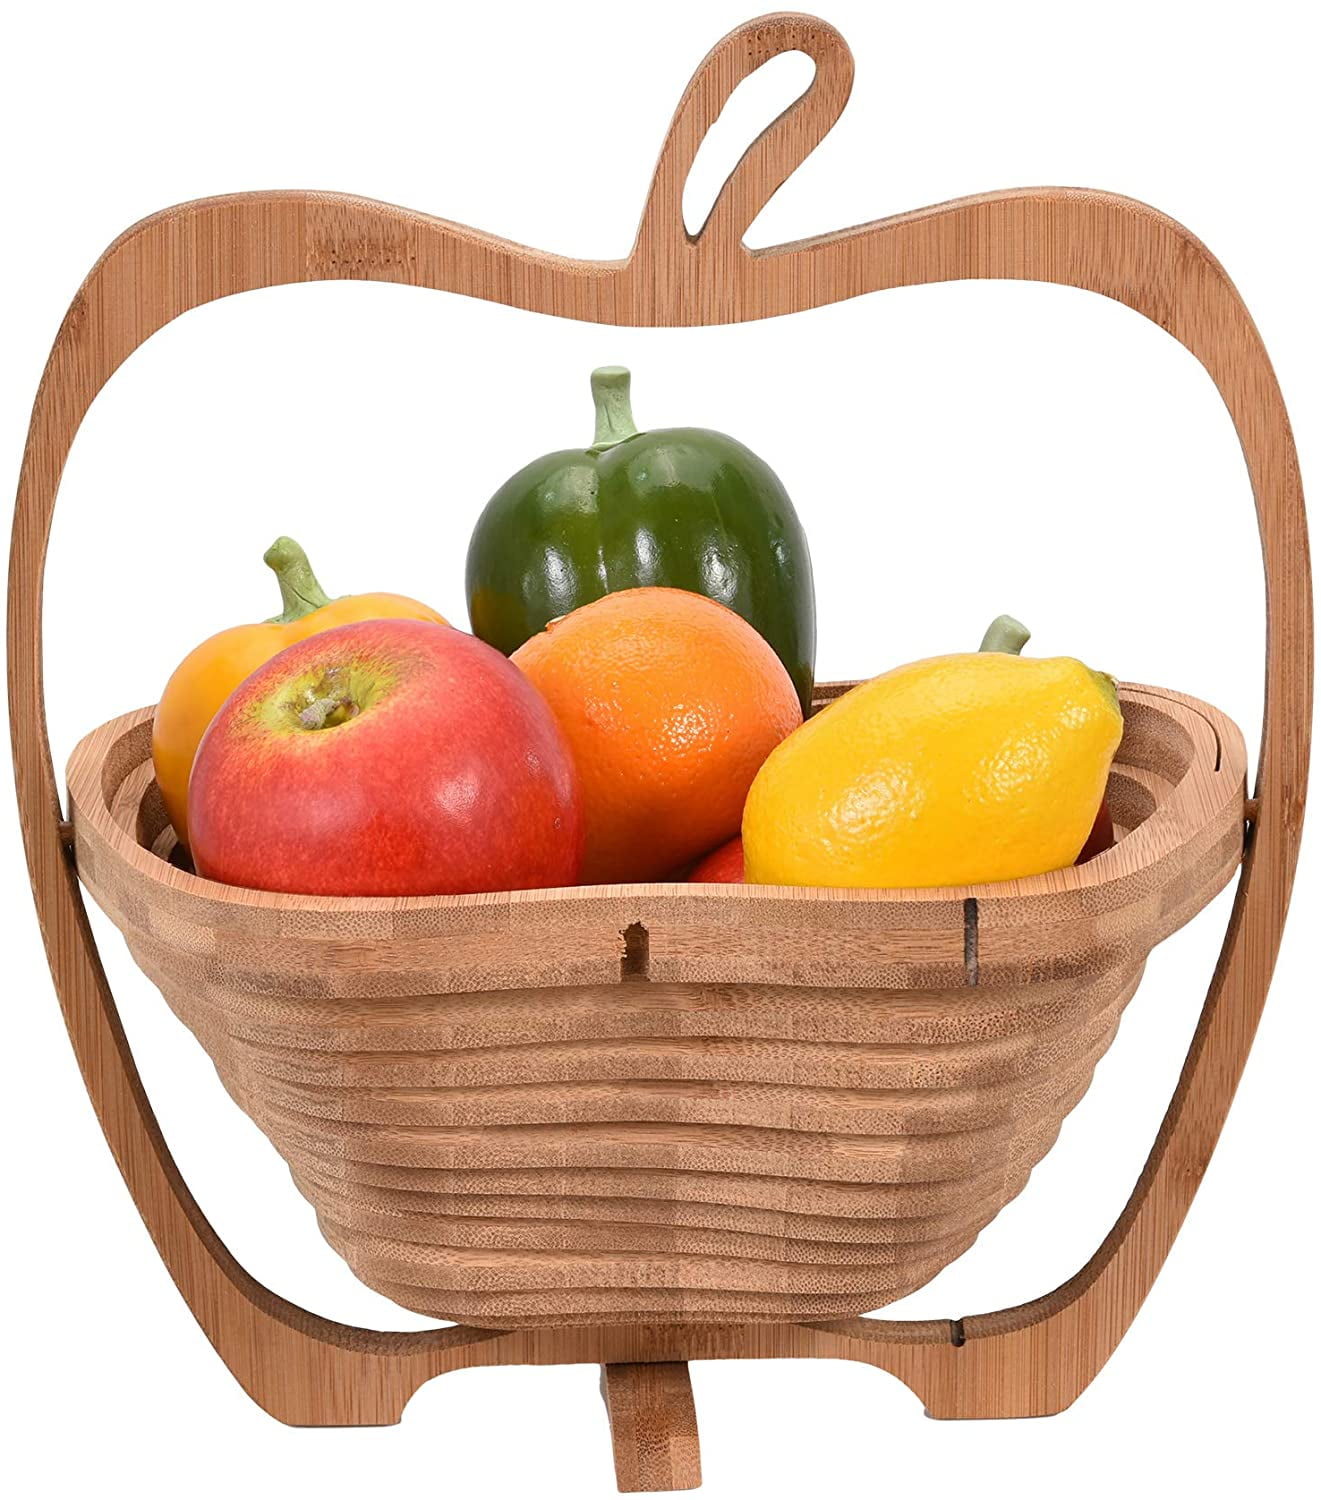 Beher Bamboo Folding Collapsible Fruit Basket Apple Design Fruit Bowl Fruit Display Rack Expandable Kitchen Decor Vegetable Storage Basket Holder 